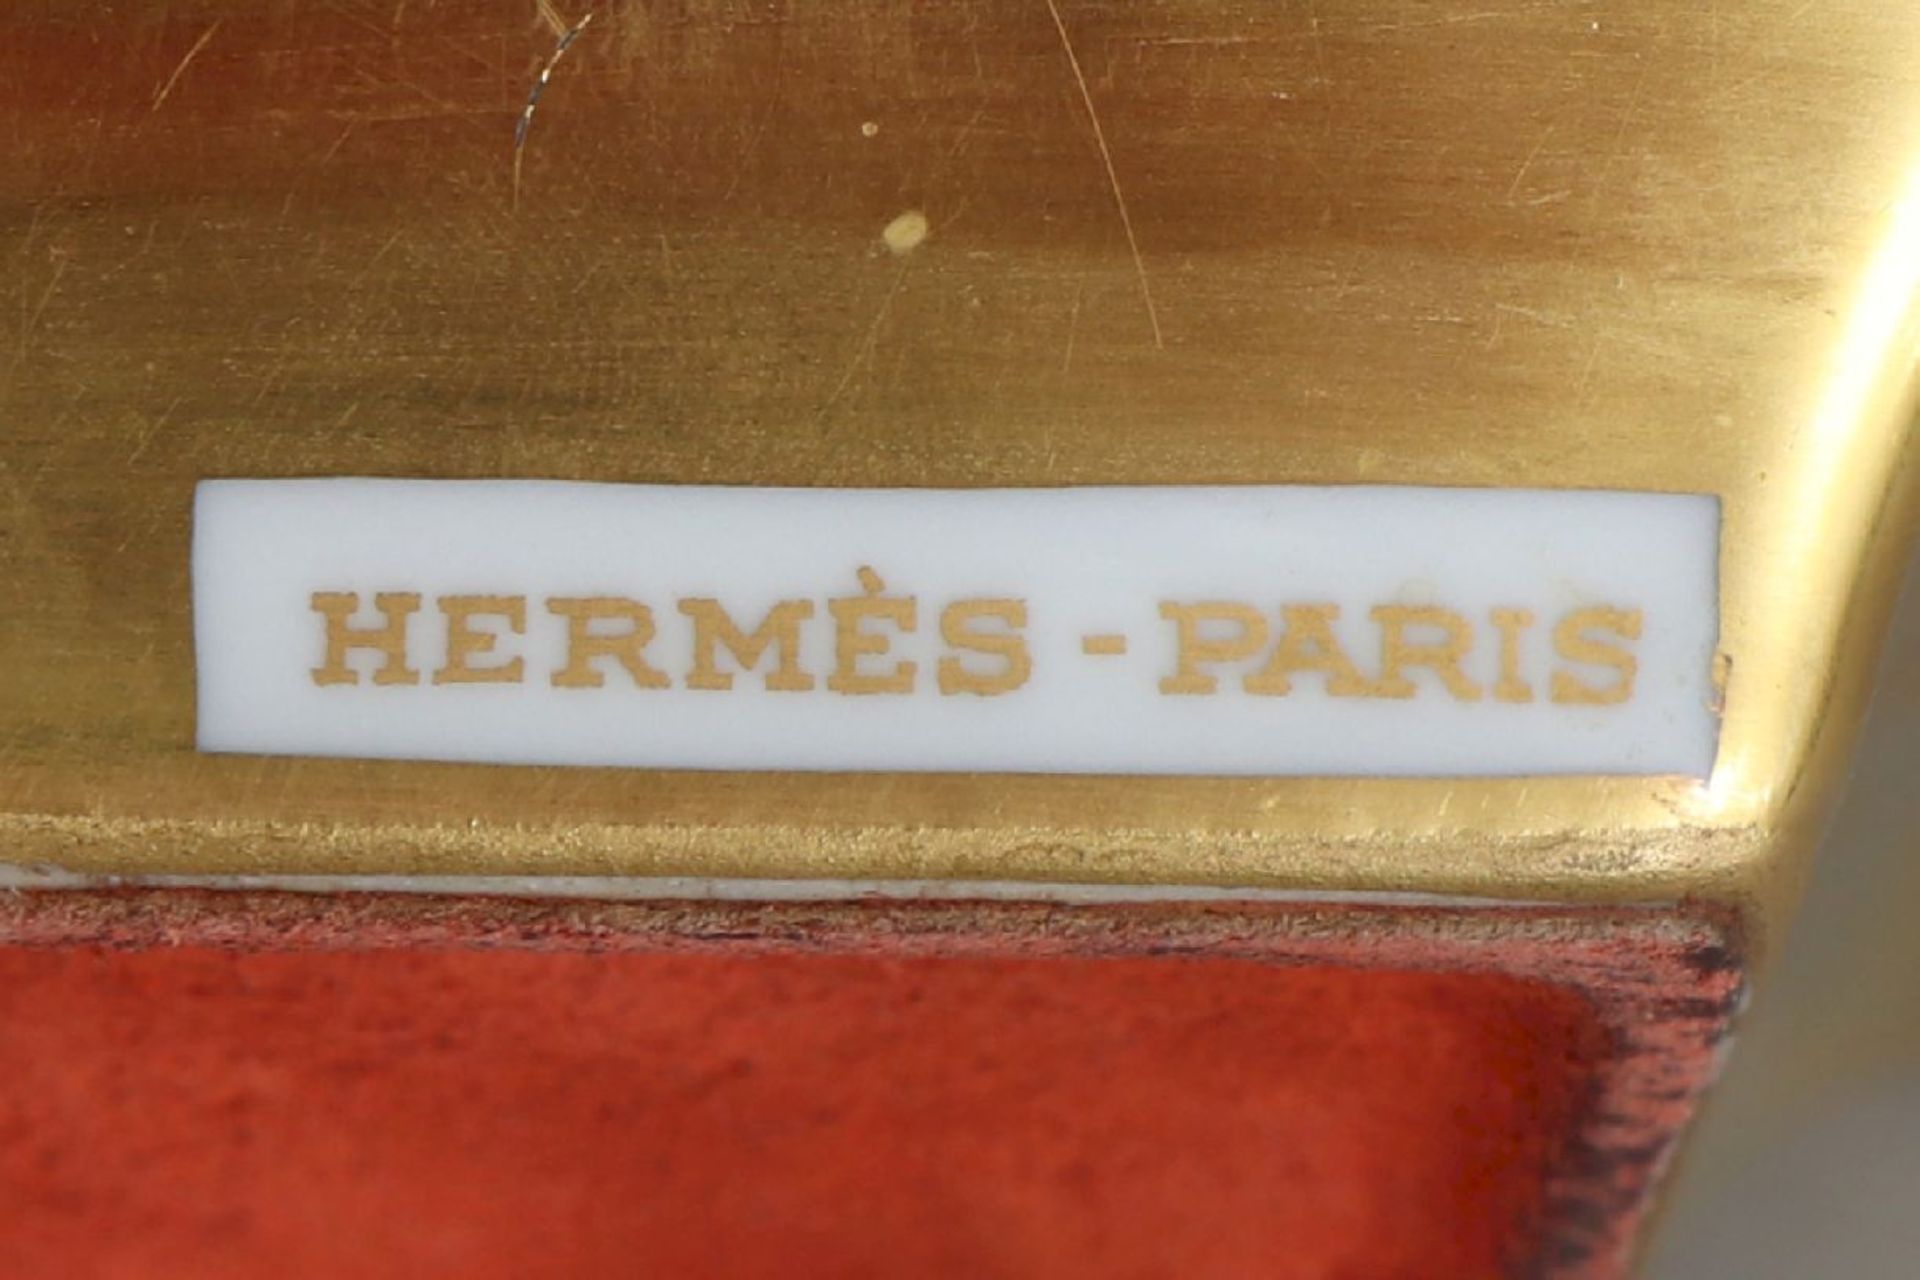 HERMÈS TischascherPorzellan, eckige Form mit 2 seitlichen Zigarettenmulden, im Spiegel - Image 5 of 5